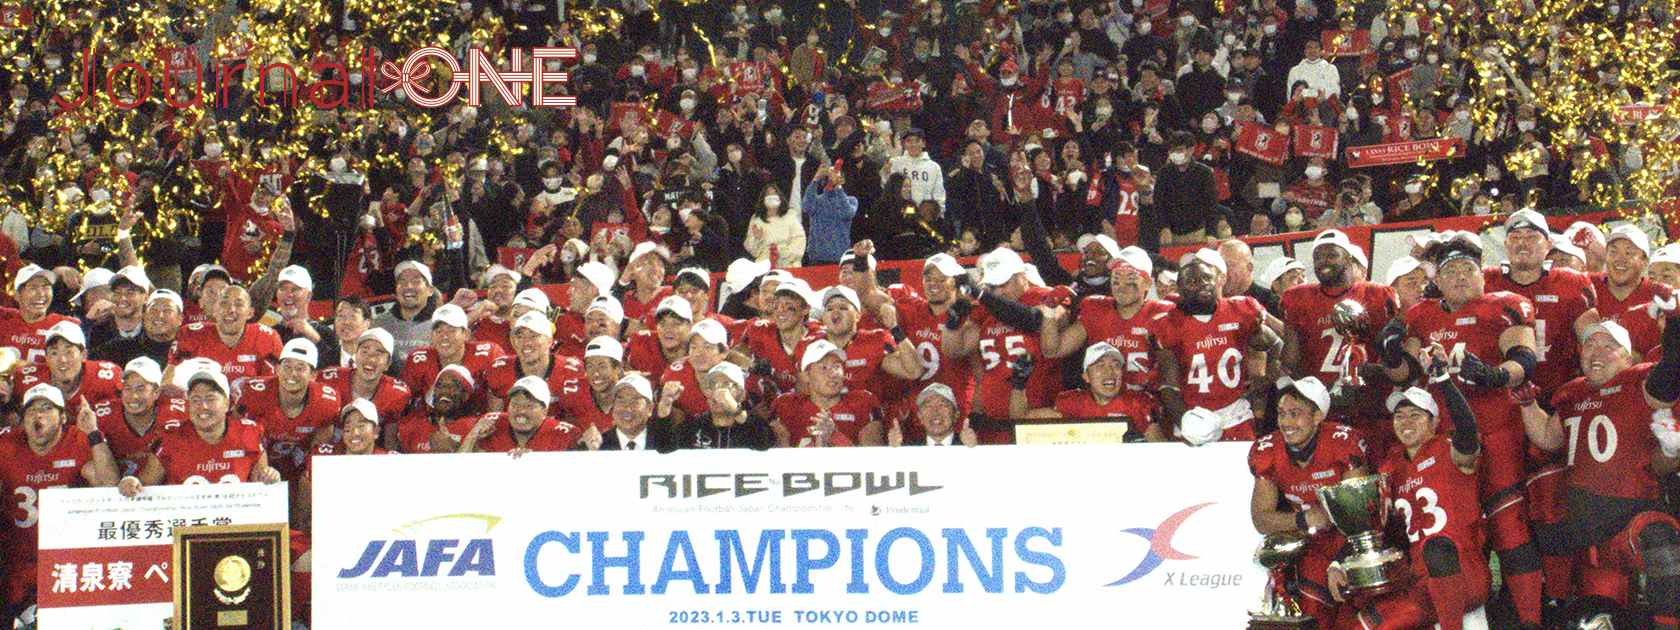 アメリカンフットボール日本選手権RICE BOWLで優勝した富士通ル論ティアーズ-Journal-ONE撮影